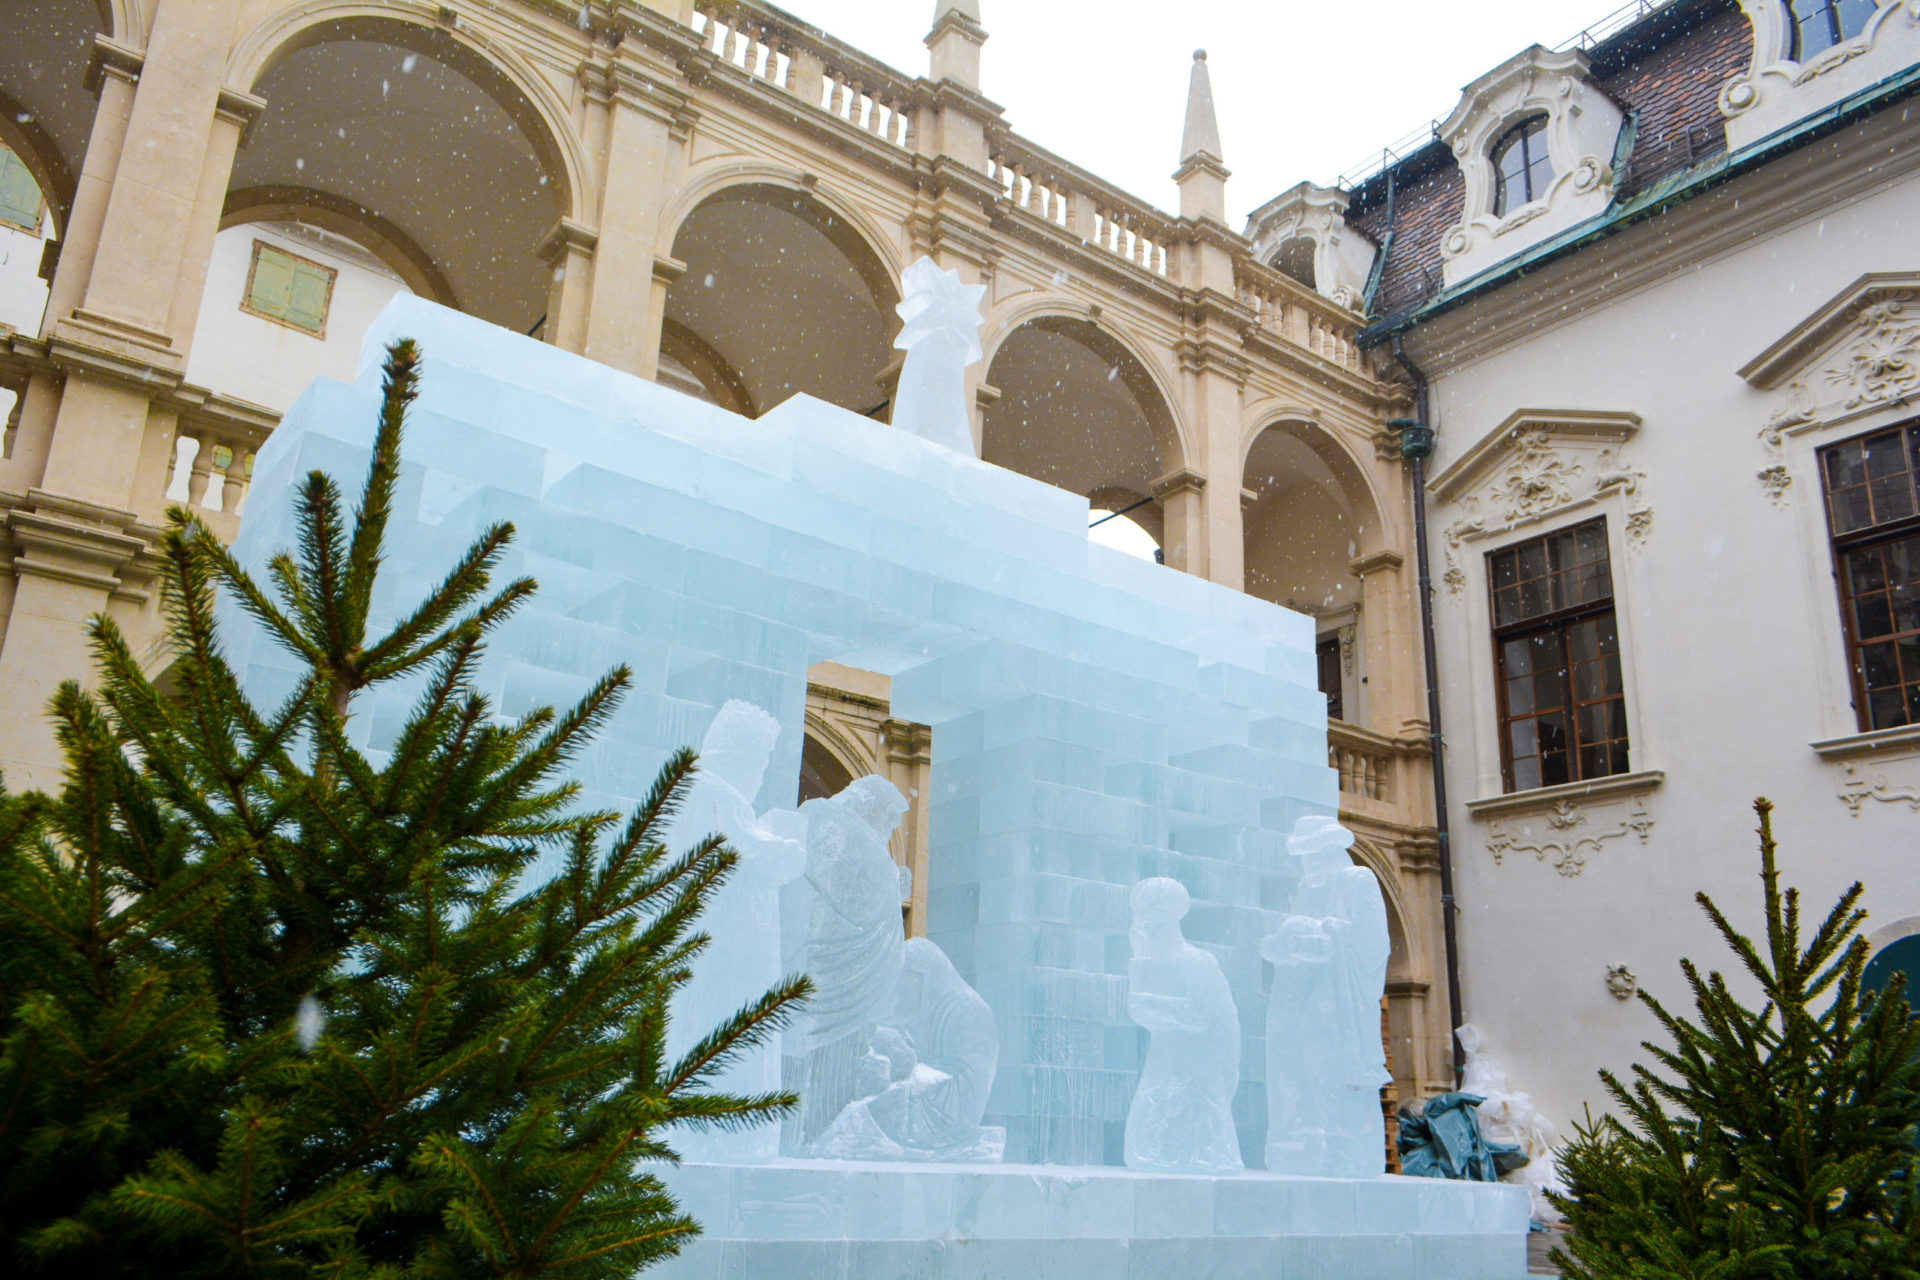 Eisskulptur in Graz, Österreich, entworfen von dem finnischen Künstler Kimmo Frosti